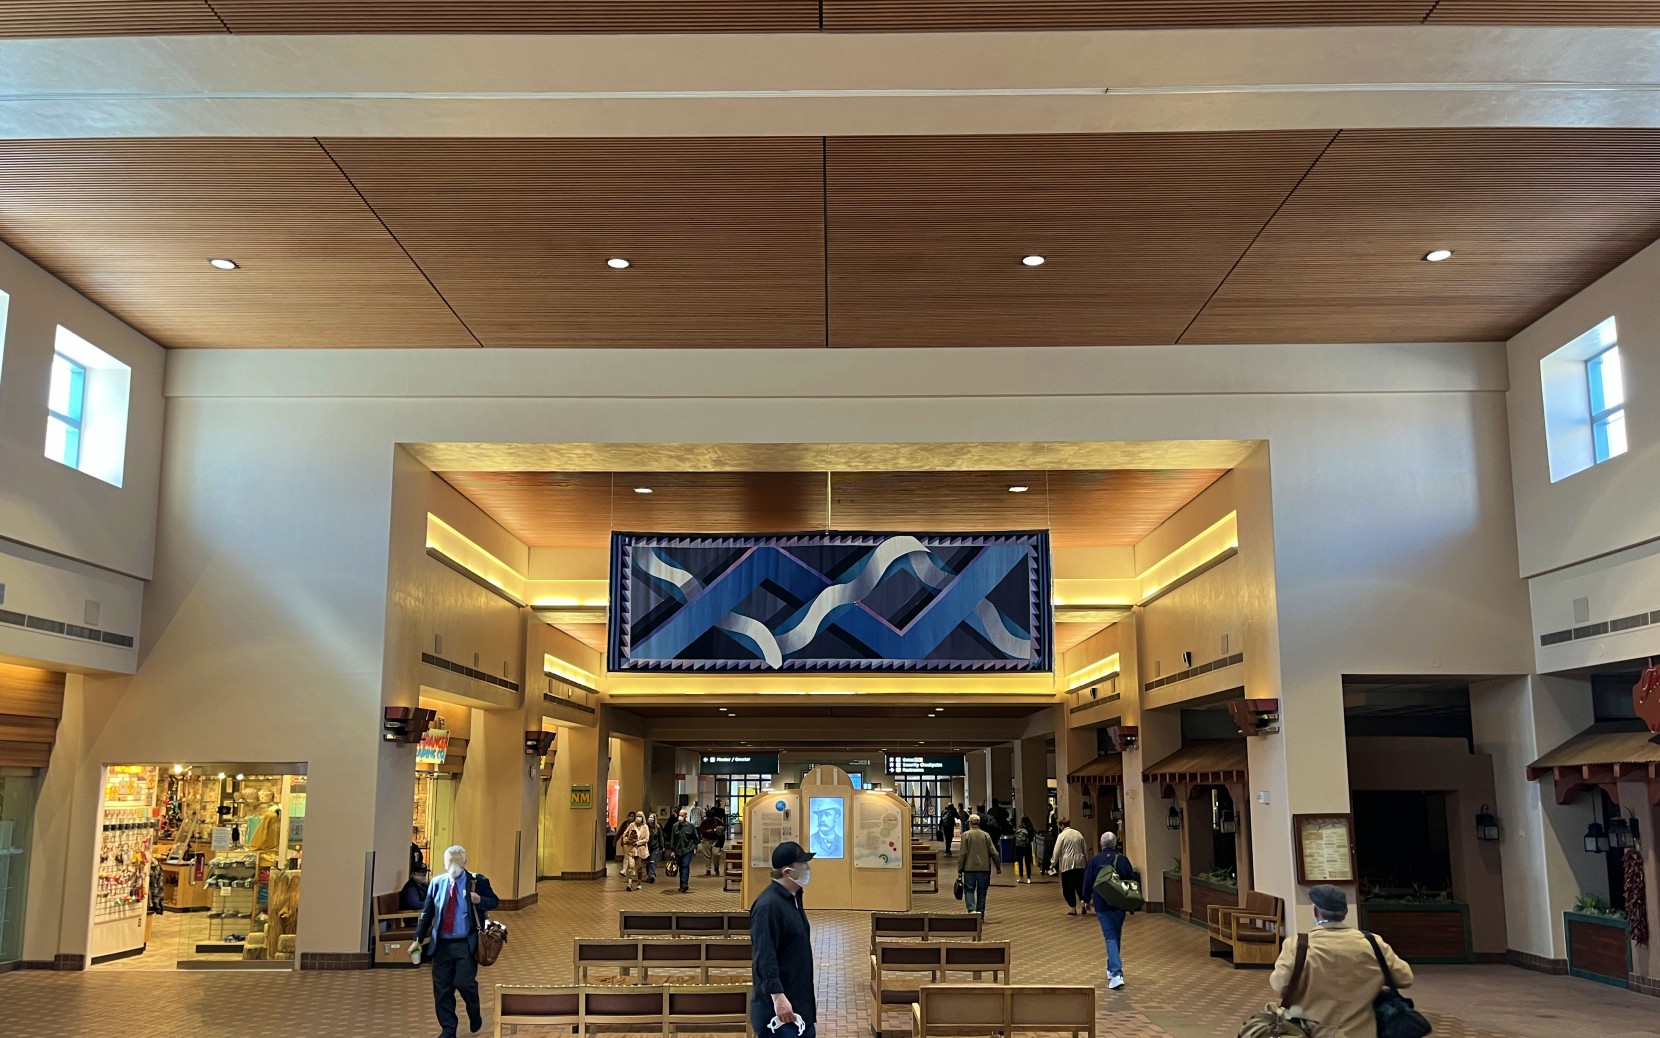 ABQ terminal interior, upper level.